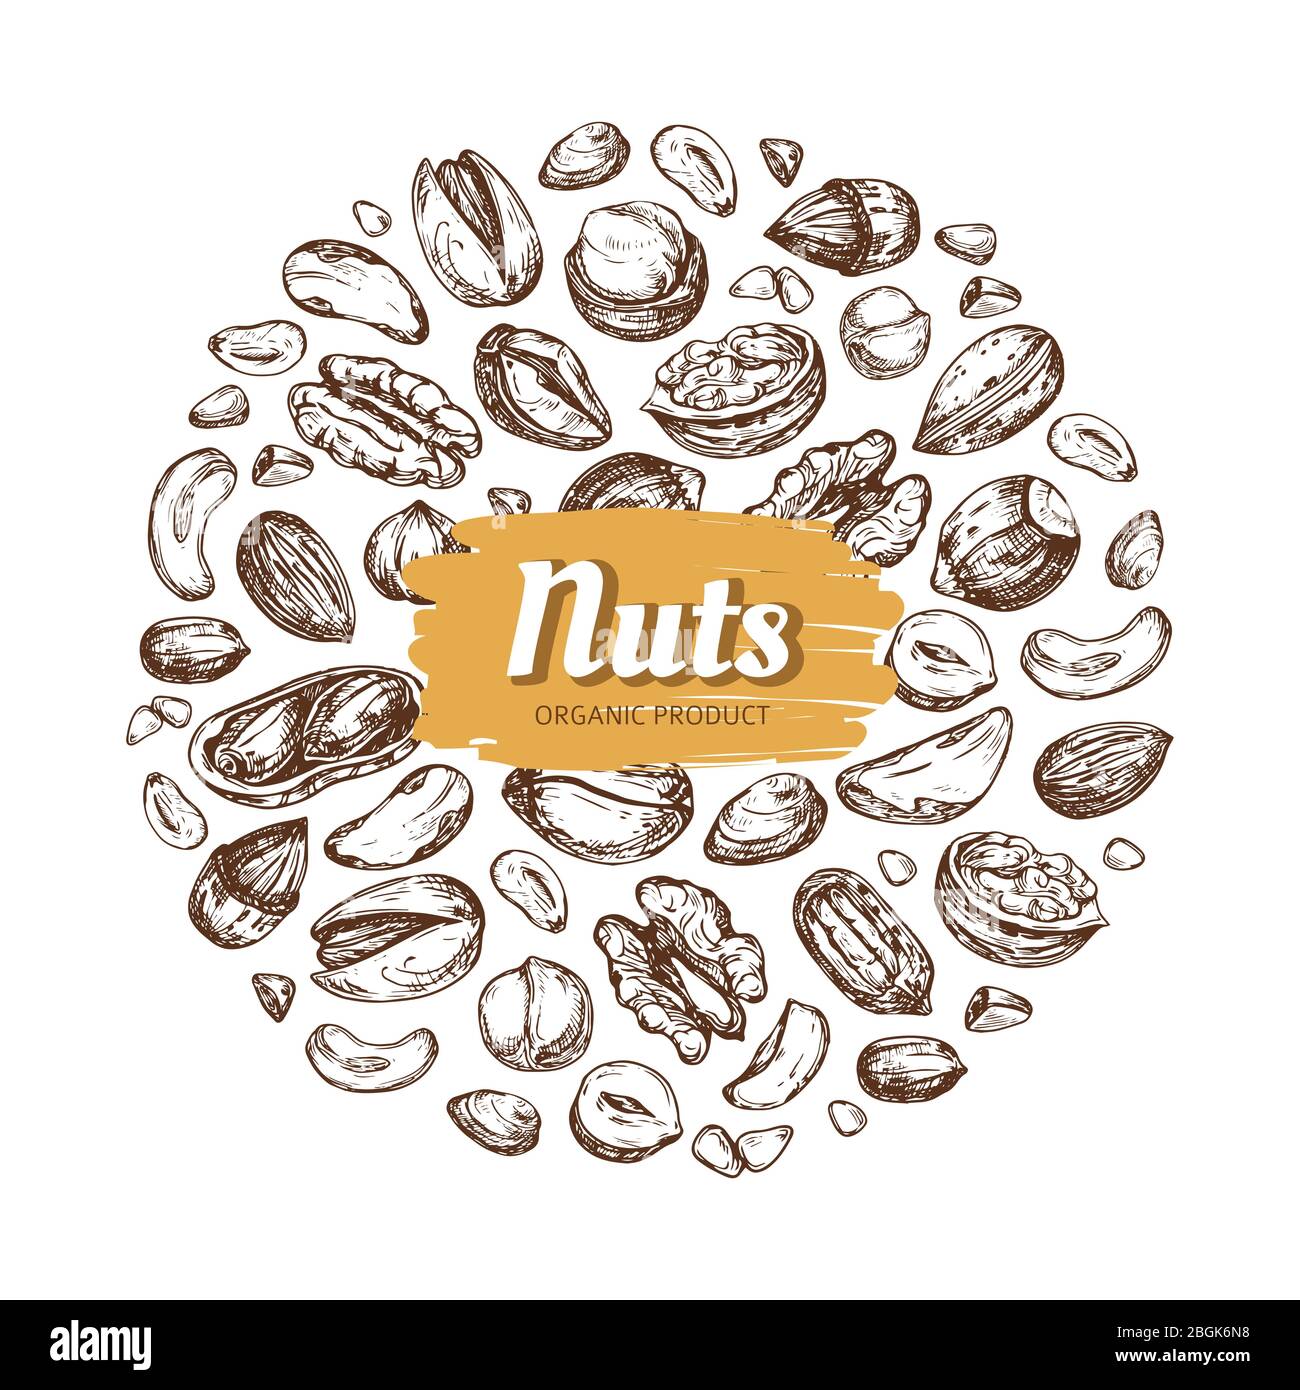 Etikett für die Essensmutter. Hand gezeichnete Nüsse und Samen Vektor-Emblem auf weißem Hintergrund isoliert. Natürliche Zeichnung Nußschale Abzeichen Illustration Stock Vektor